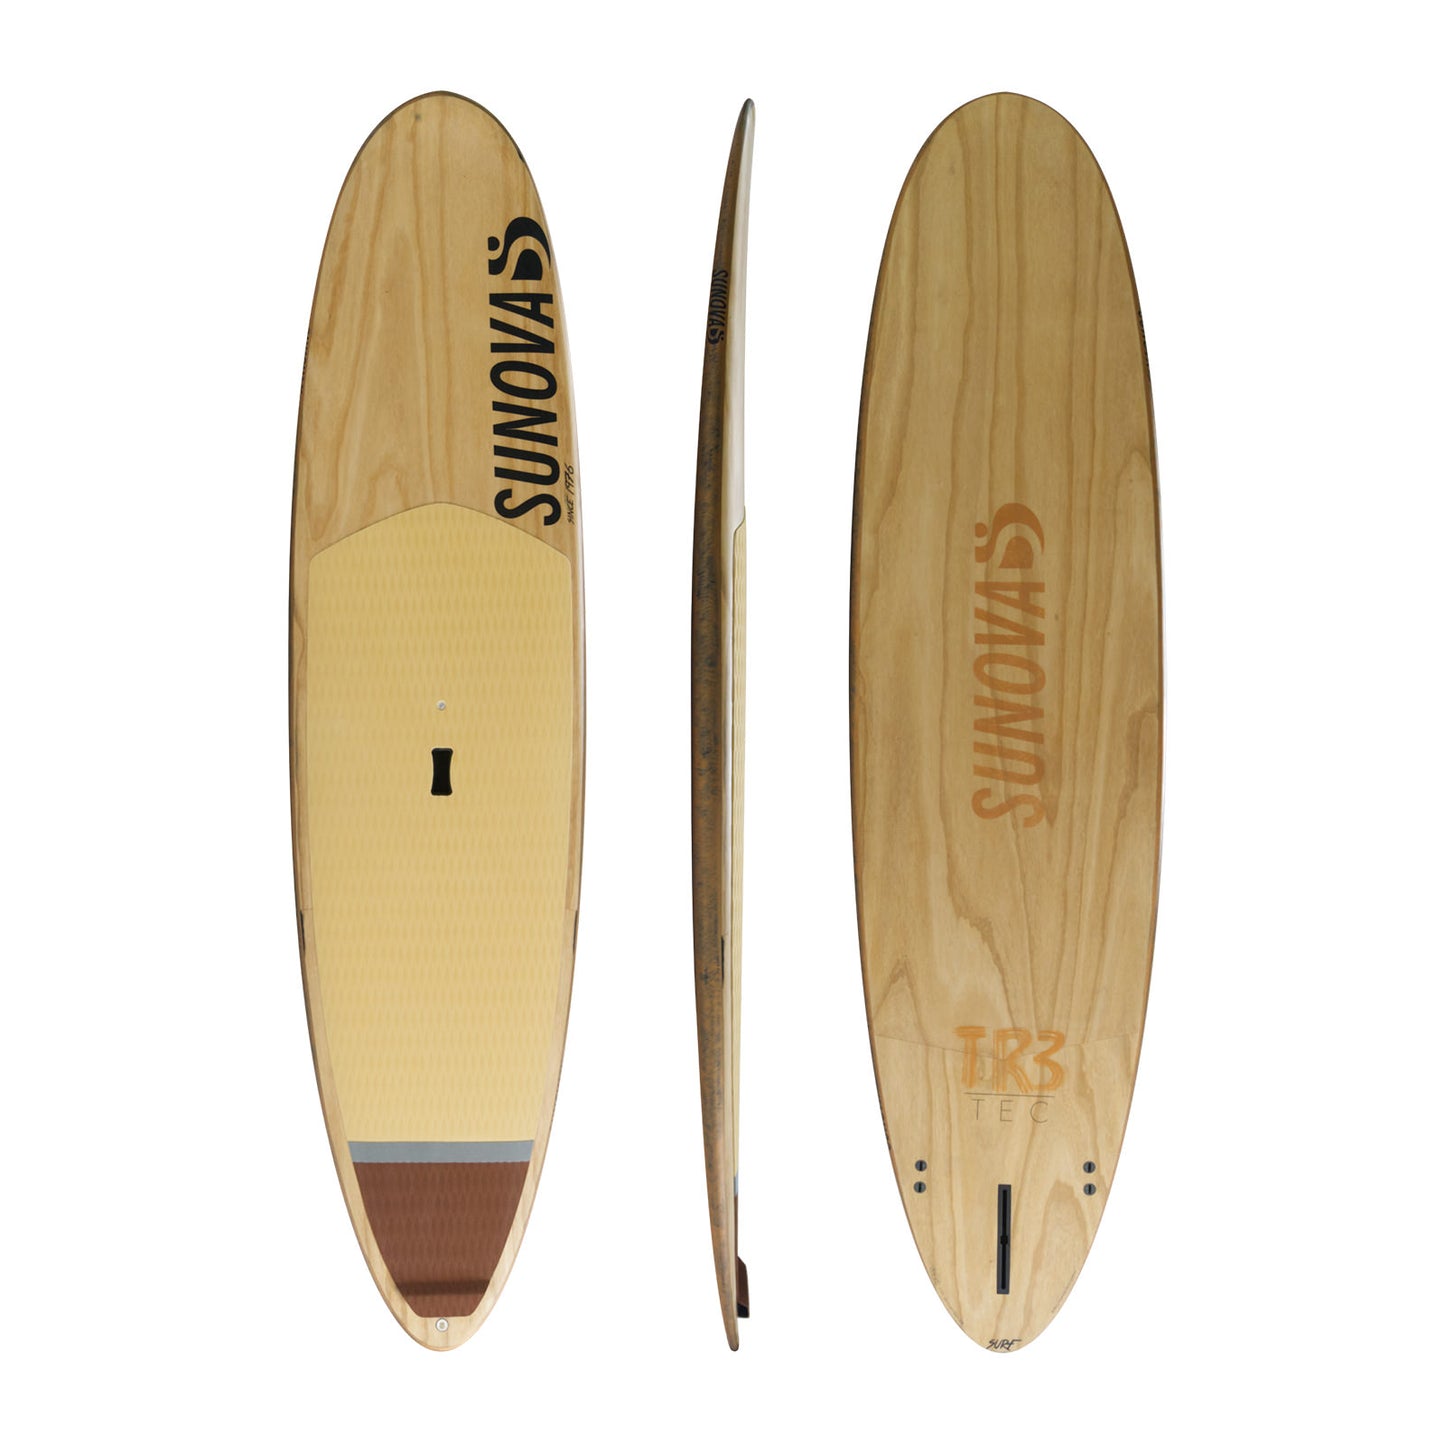 Drei Ansichten des Sunova Surf Wave SUP Board in der TR3 Bauweise.